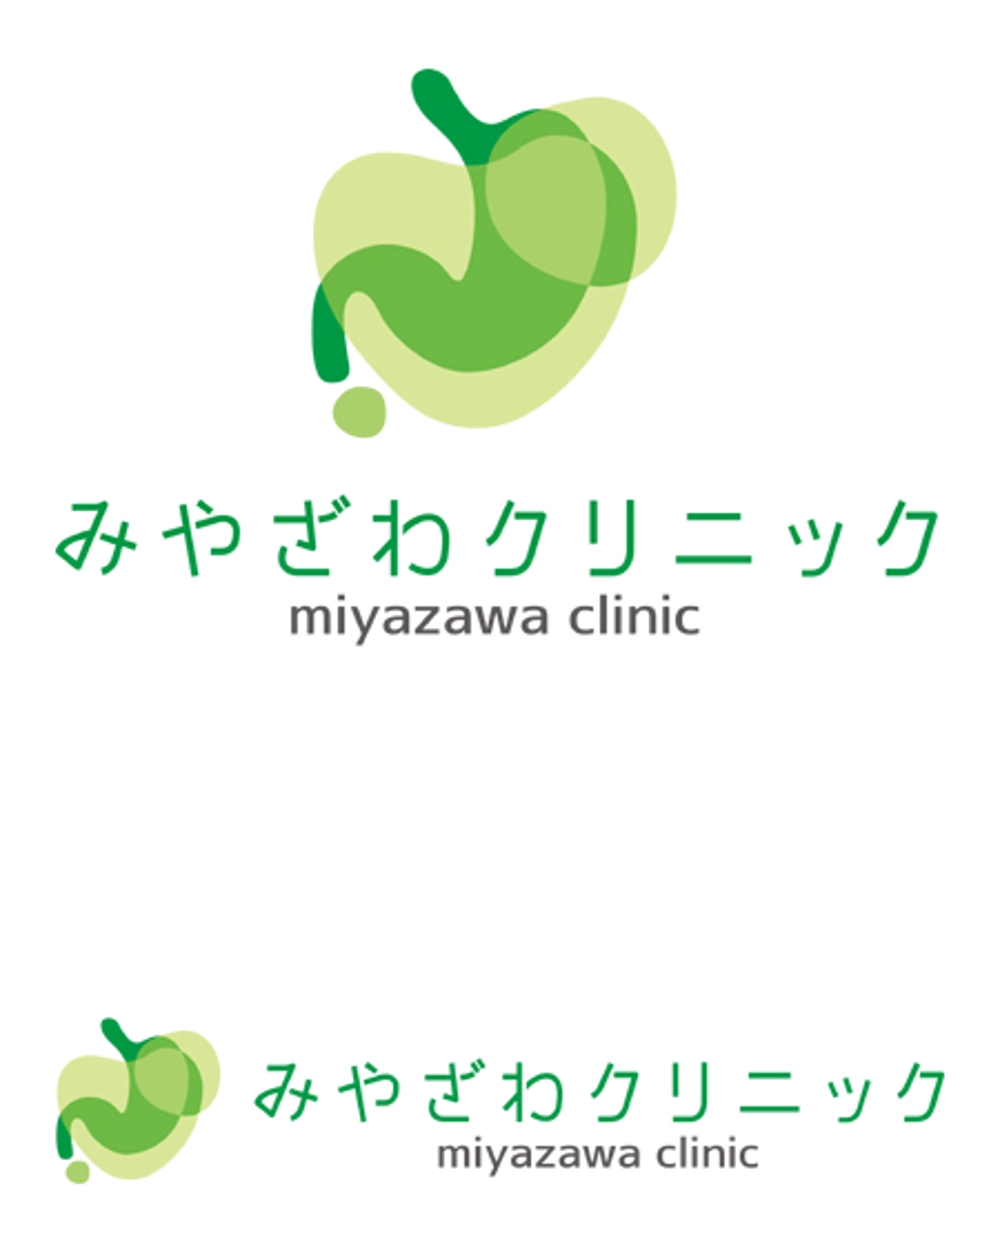 miyazawa clinic -6k.JPG